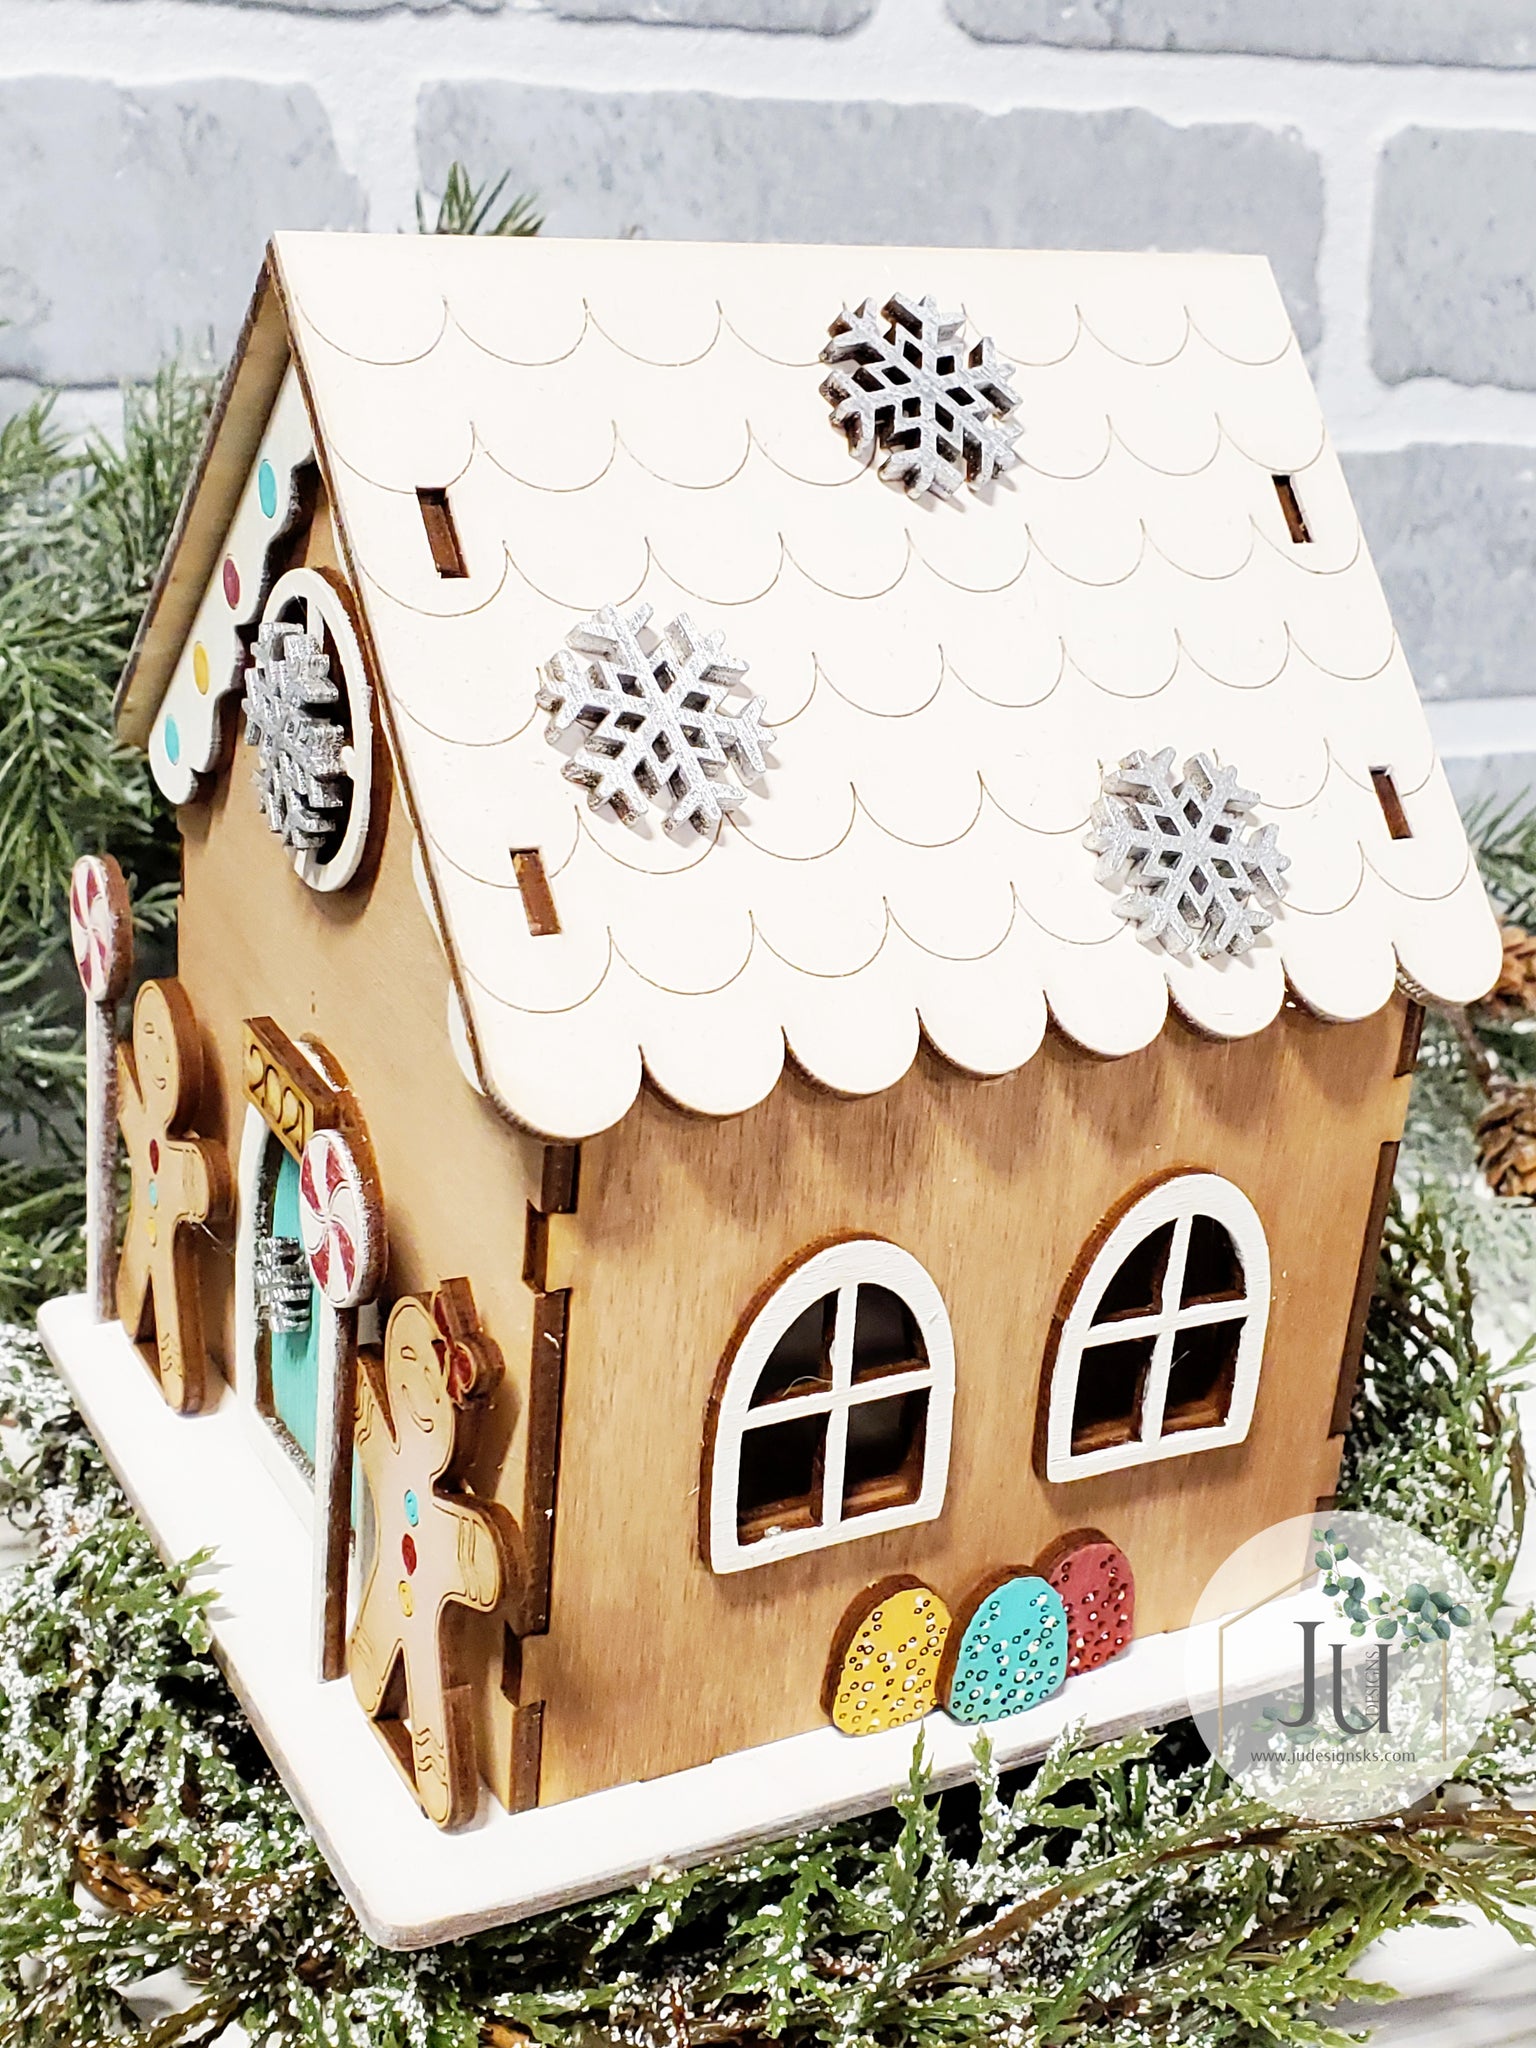 Wooden Embroidery Gingerbread House Kit - Meri Meri – Mudpie San